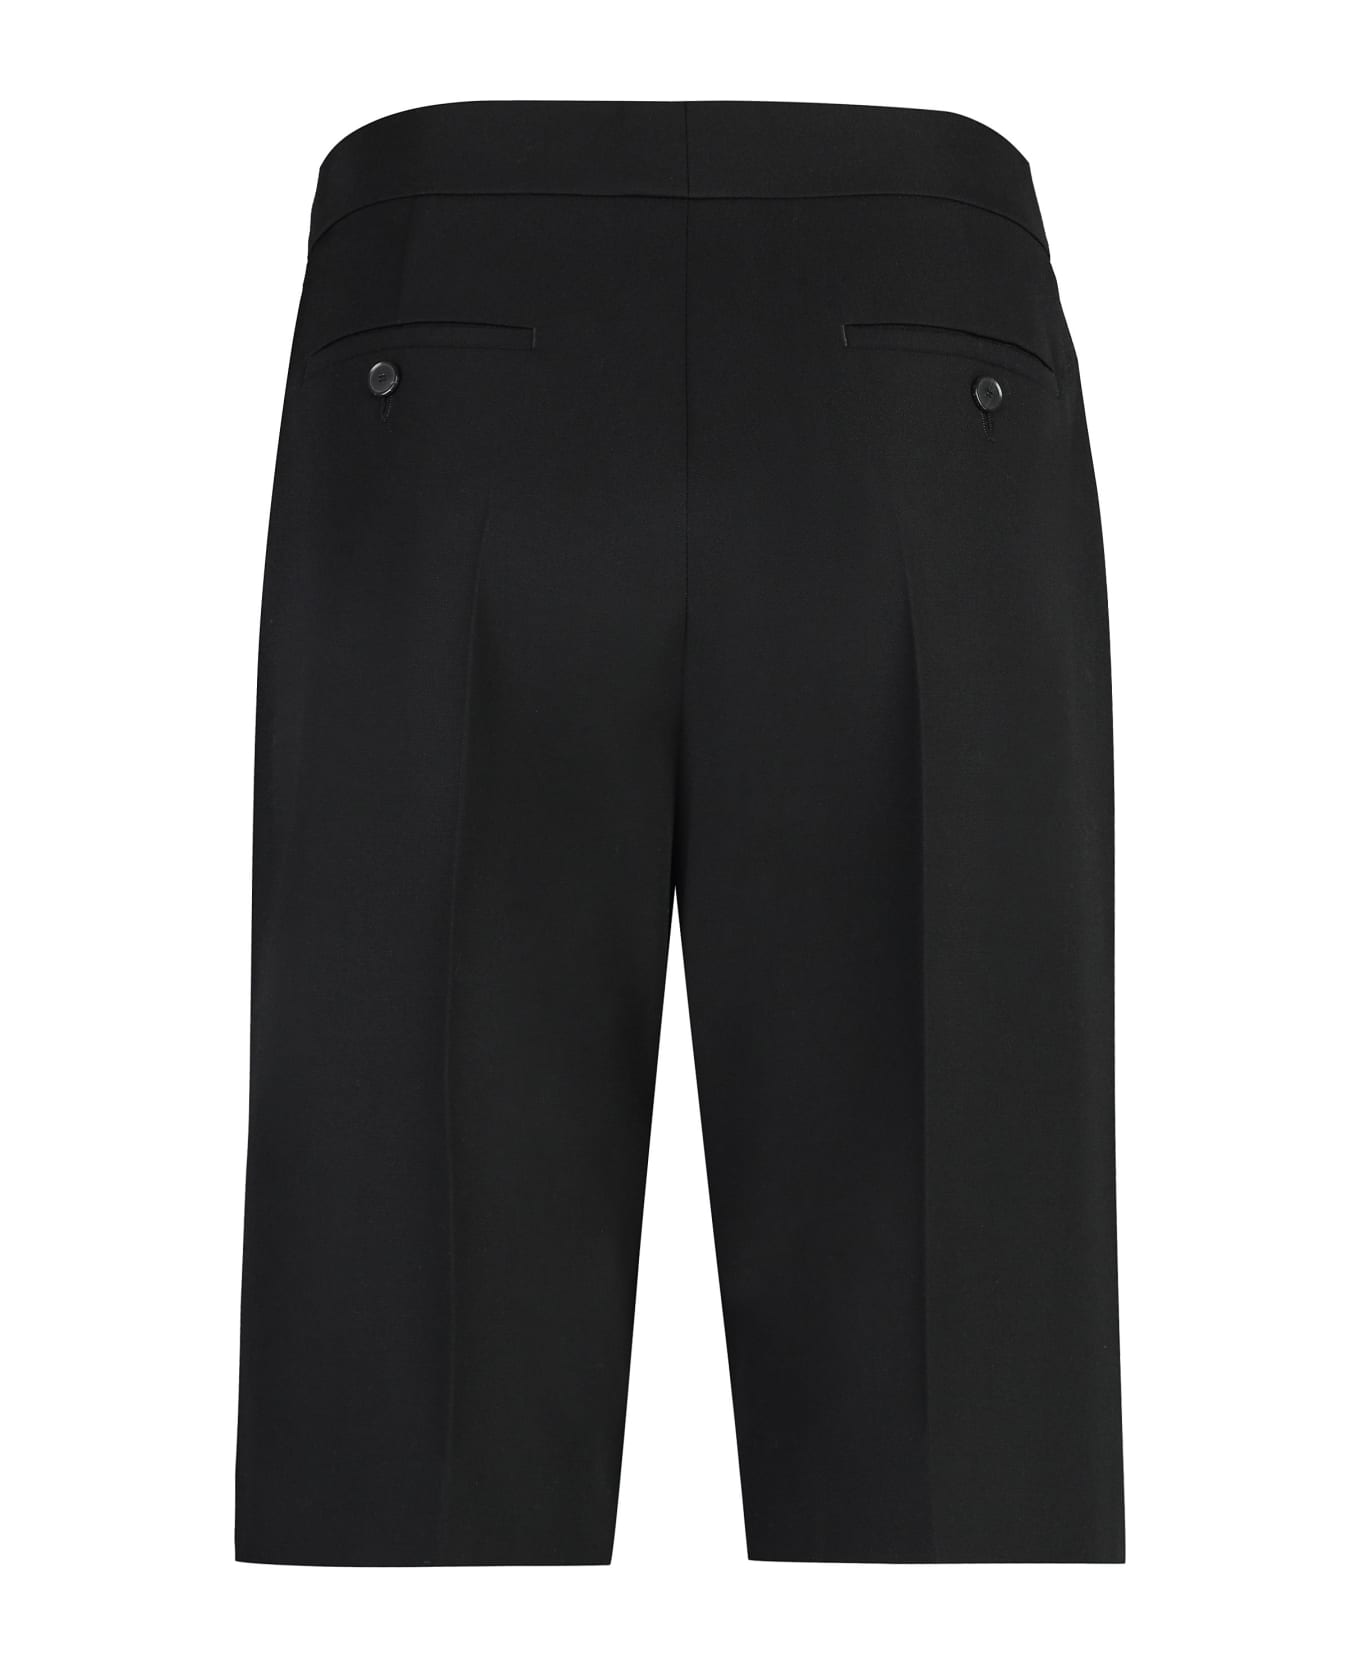 Givenchy Wool Shorts - black ボトムス